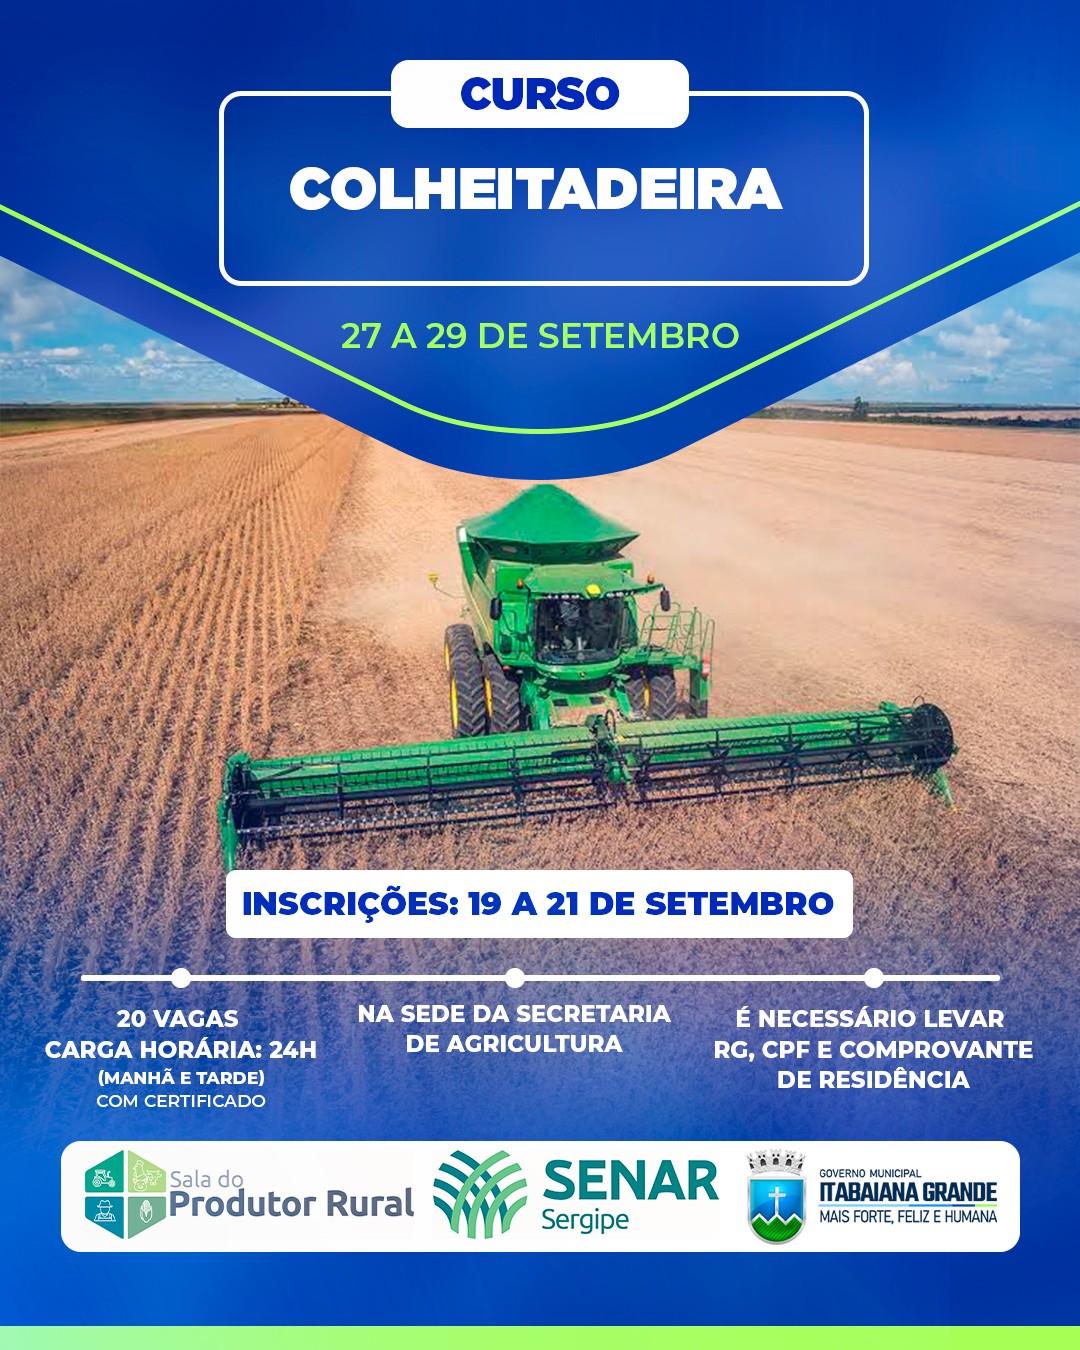 Secretaria de Agricultura lança curso de Colheitadeira; inscrições iniciam dia 19